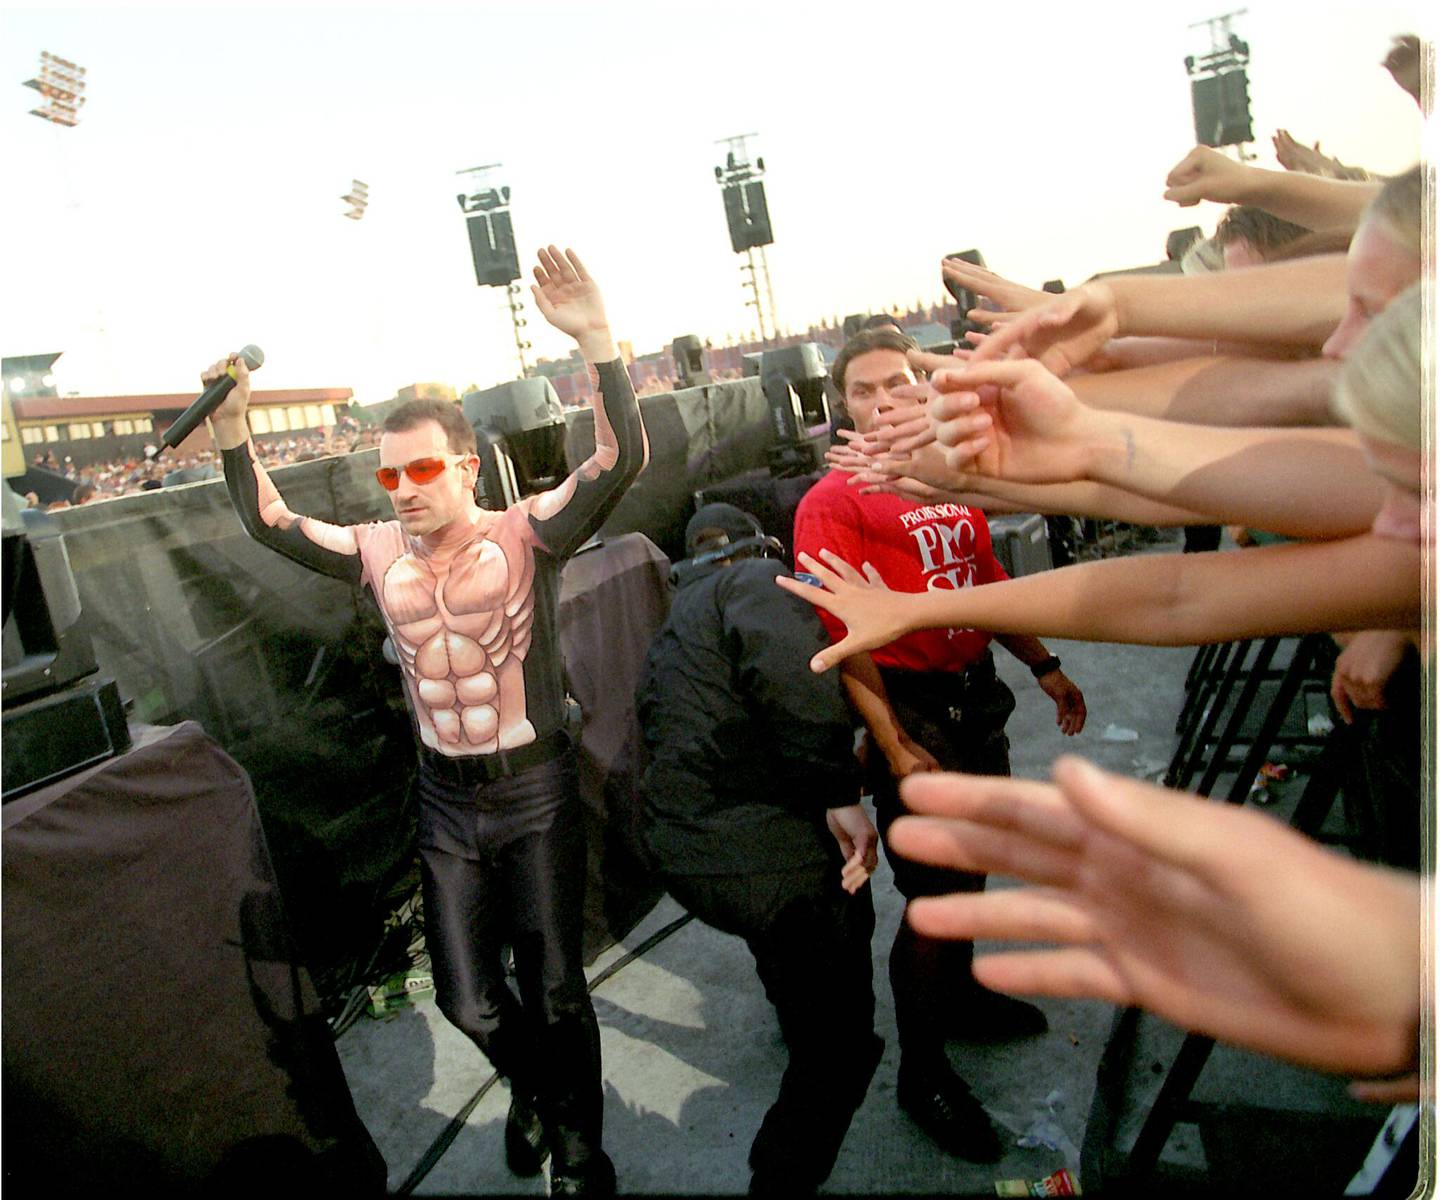 Bono og U2 er så store at de blir opplagte kandidater til å være Verdens verste band. Her på Valle Hovin i 1997.